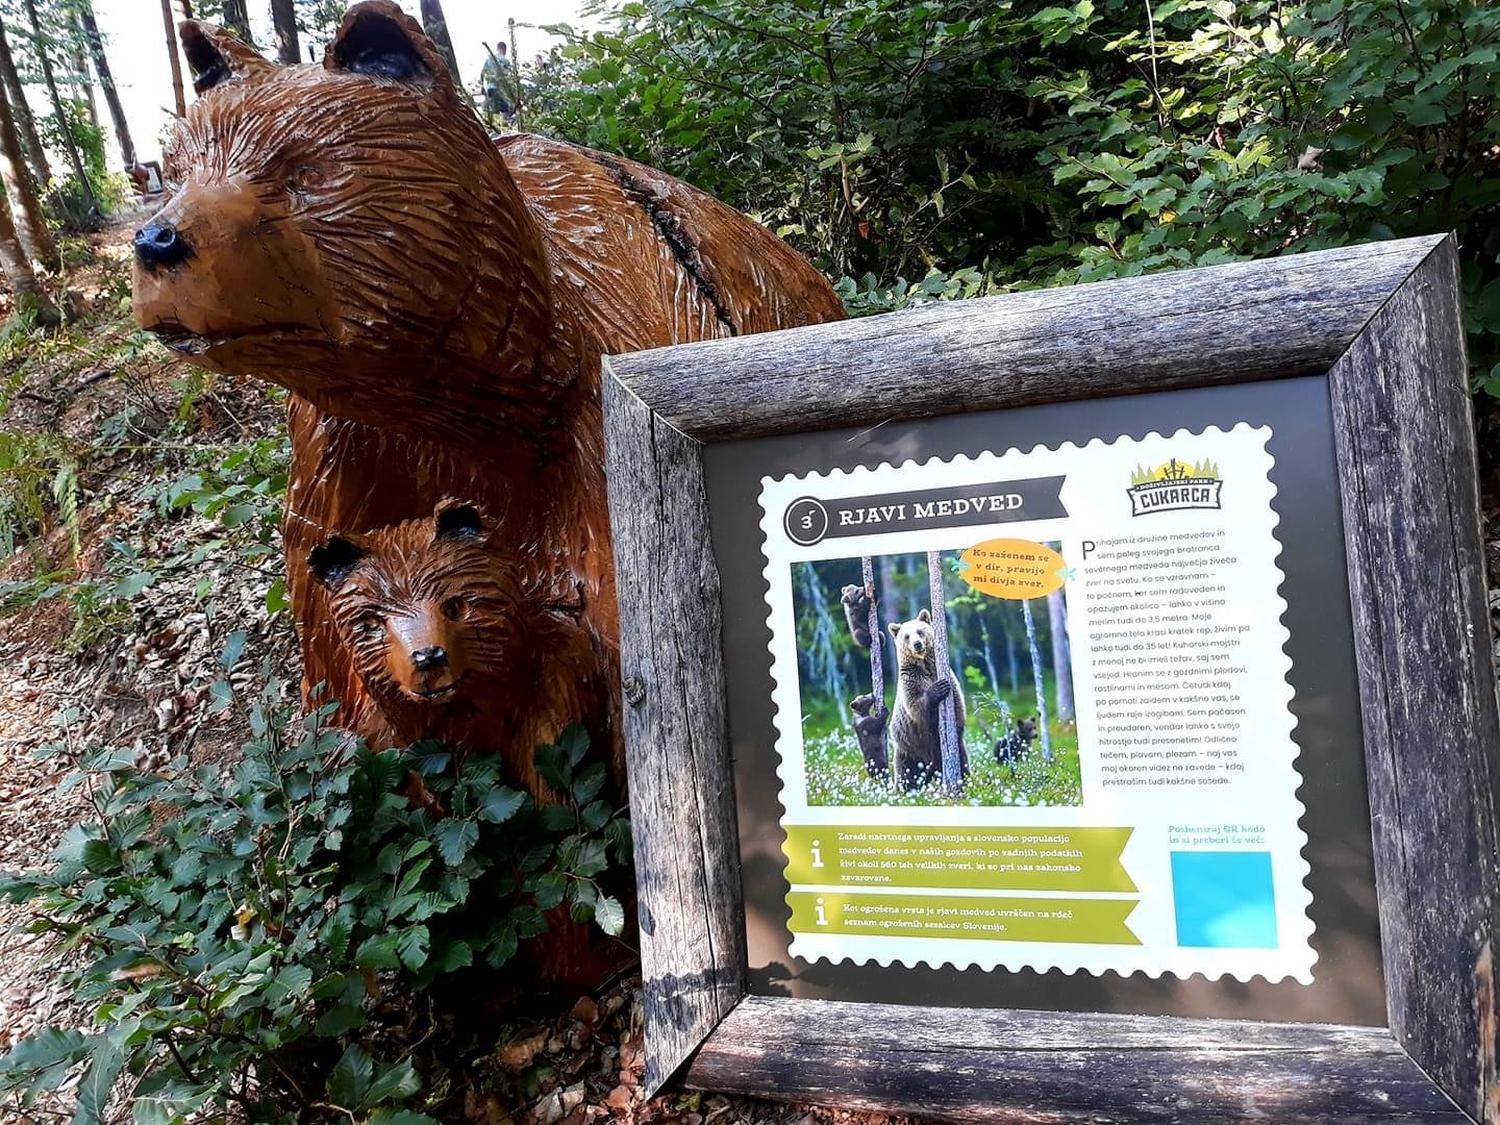 Učna pot bobra Bobija v doživljajskem Parku Cukarca v bližini Šentvida pri Stični